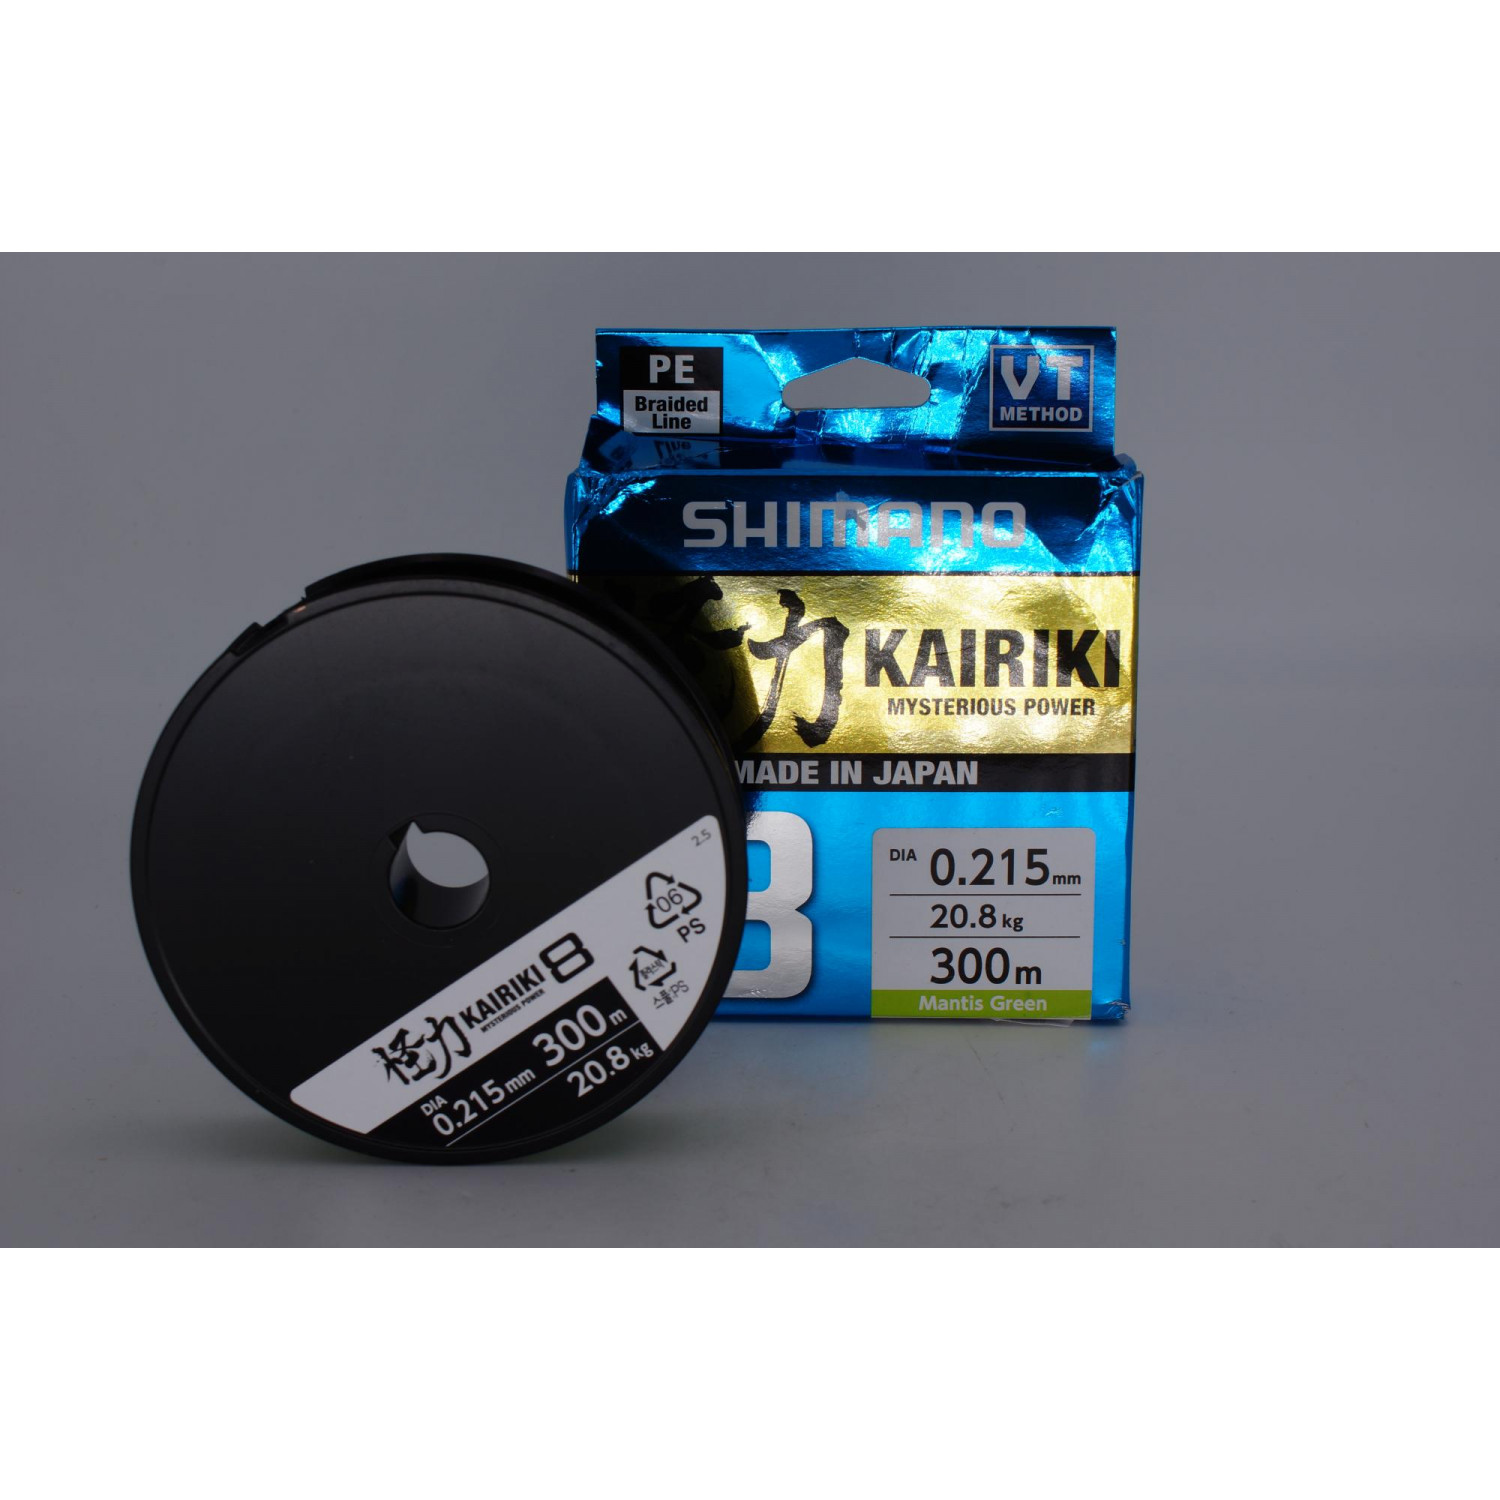 Shimano Kairiki 8, 300m, 0,22mm, 20.8 / 45,86lbs, Mantis Green, 8 times braided  fishing line, packaging damaged